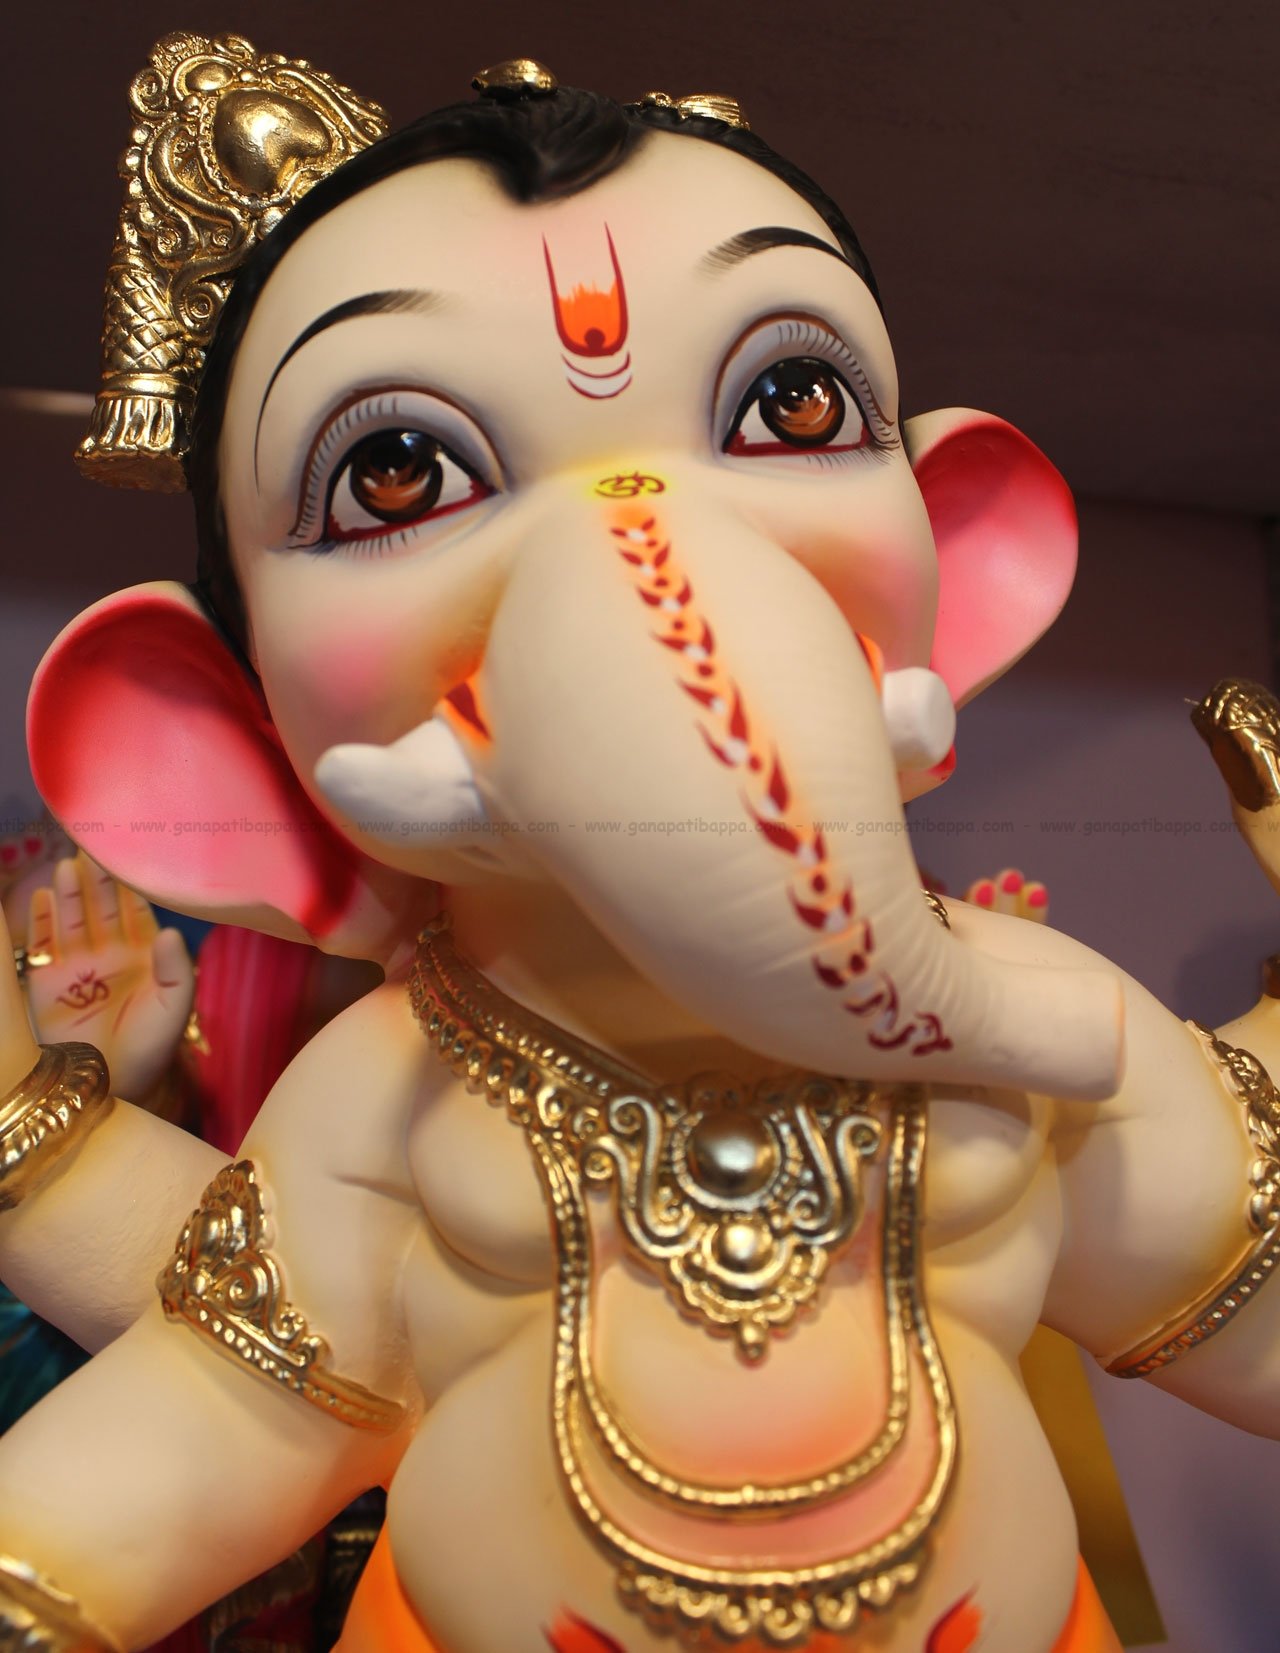 500 Ganesha Pictures  Download Free Images on Unsplash